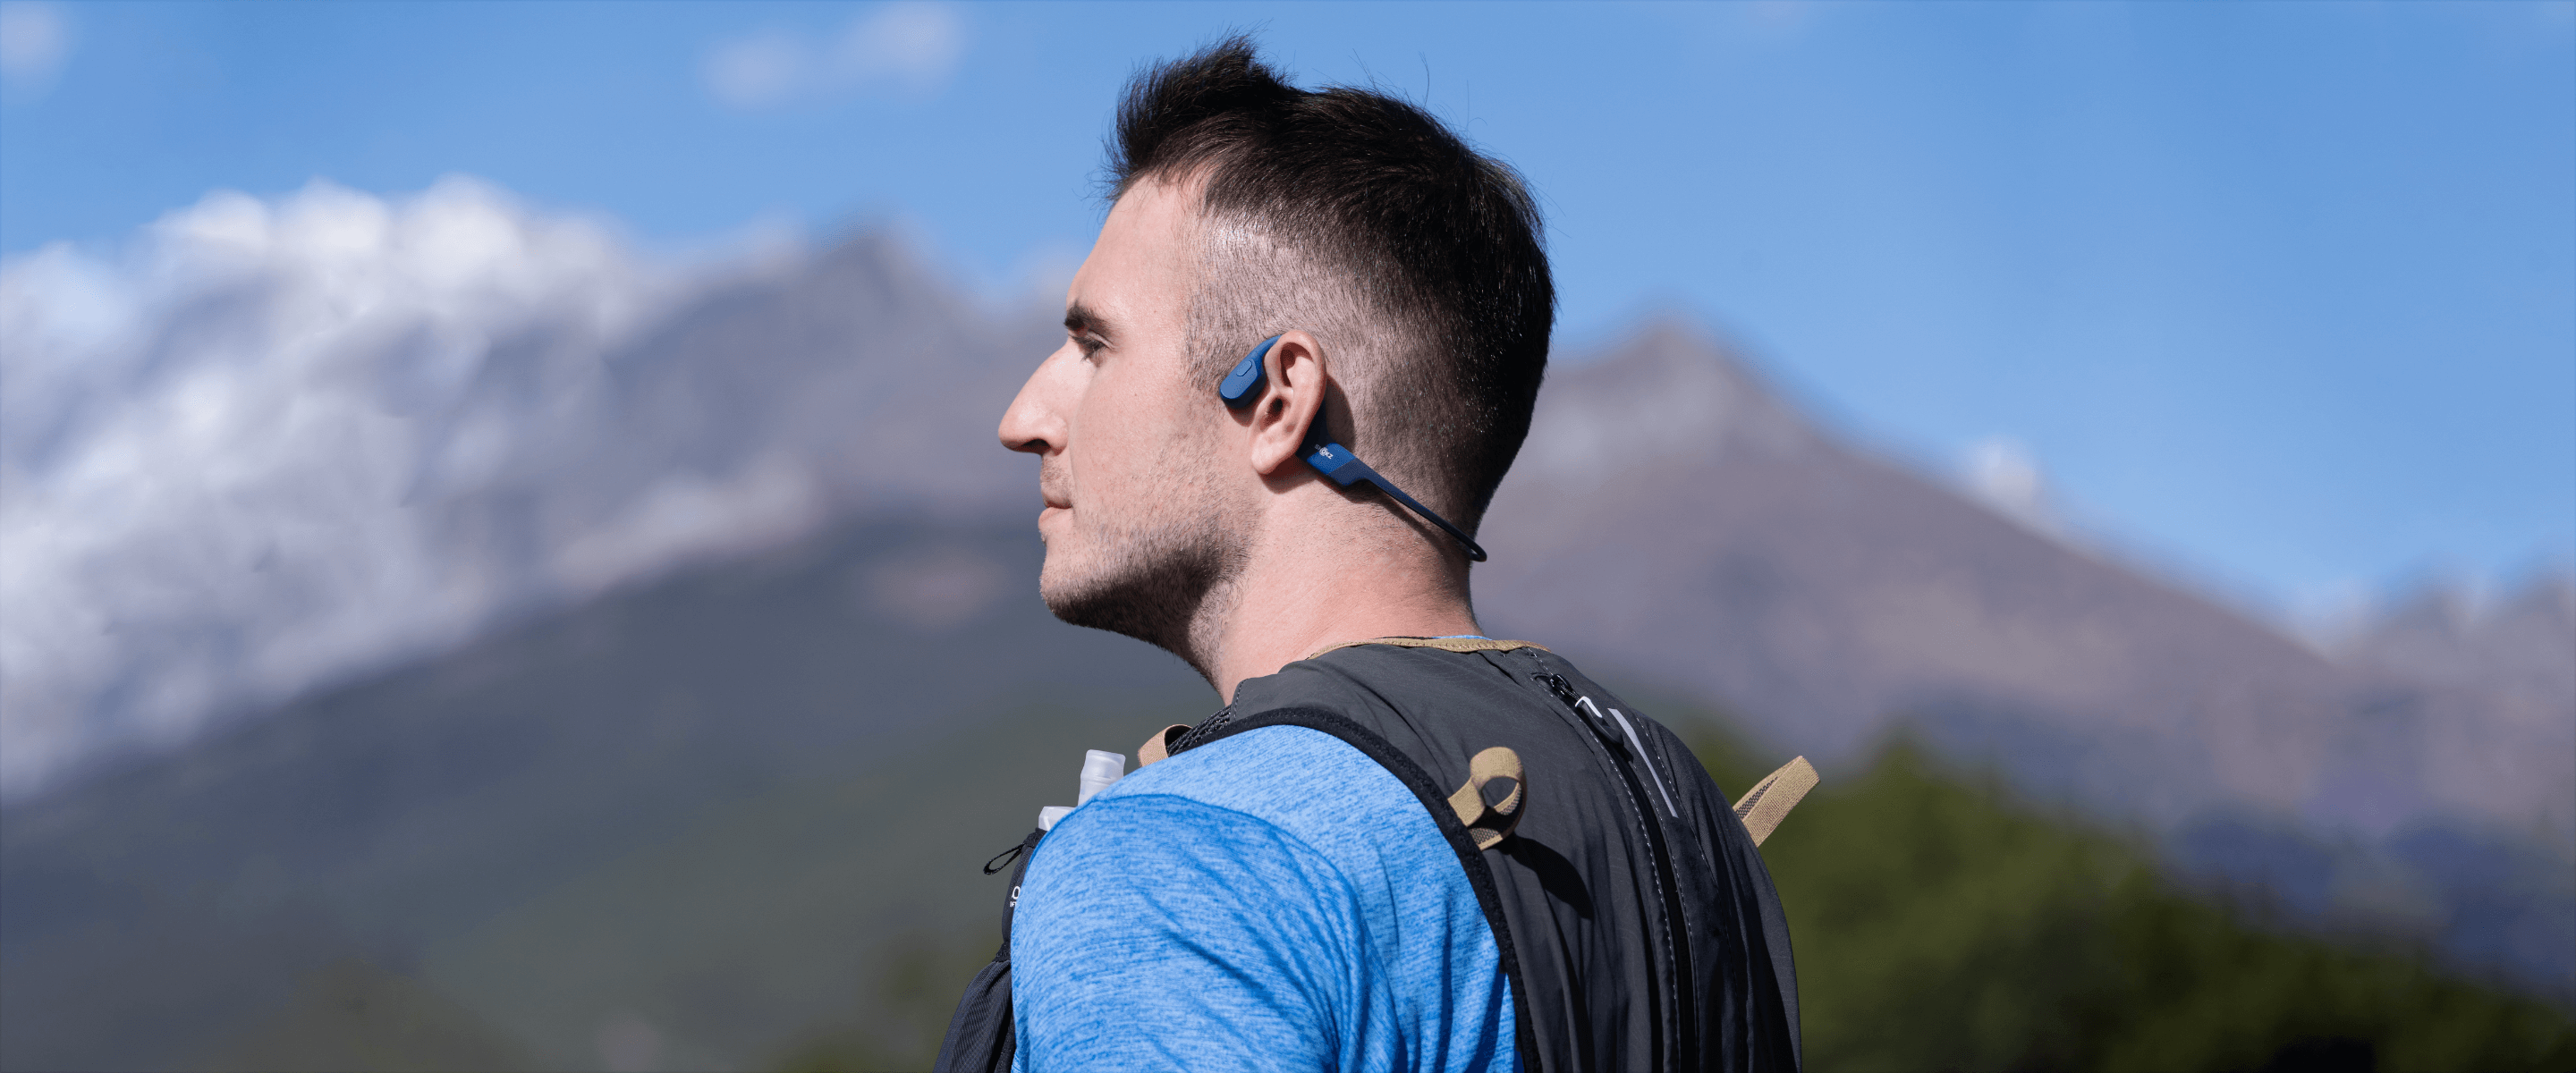 Why Choose Shokz’s Open-Ear Headphones?